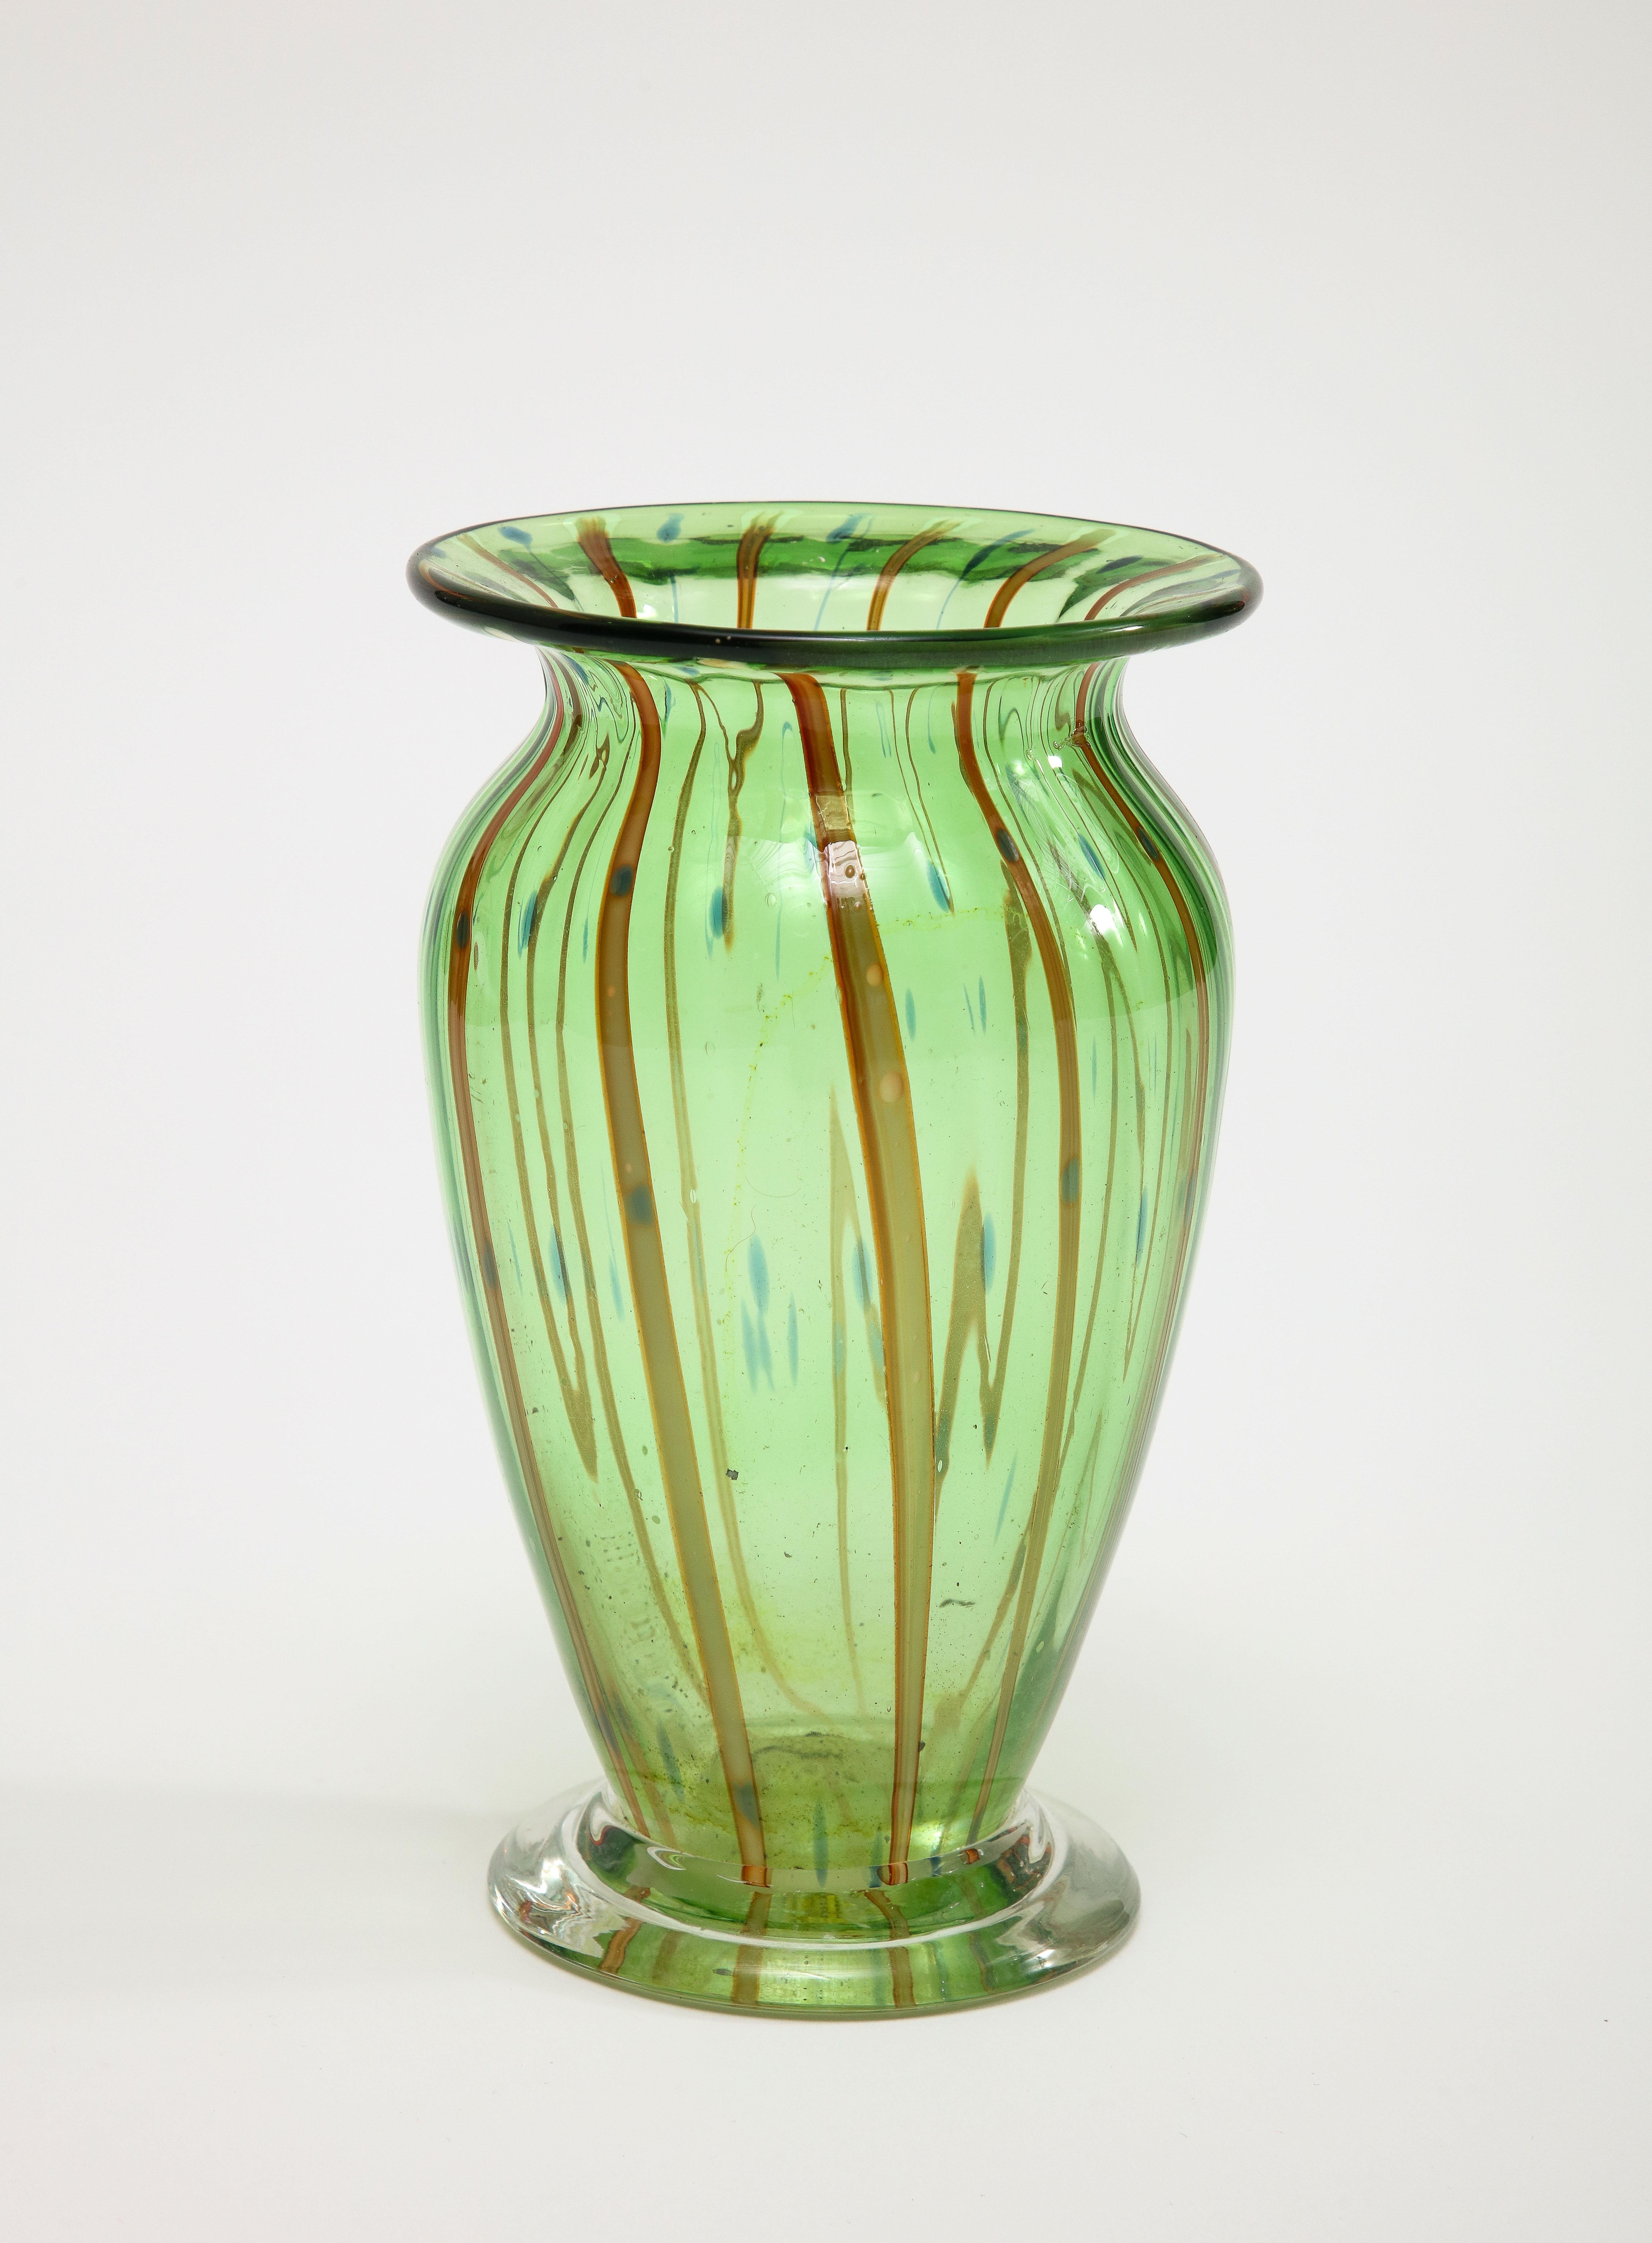 Vase italien de Murano du milieu du siècle, en verre soufflé vert avec des rayures bordeaux peintes et des points bleus. 

Dimensions supplémentaires - 
base de 3,75